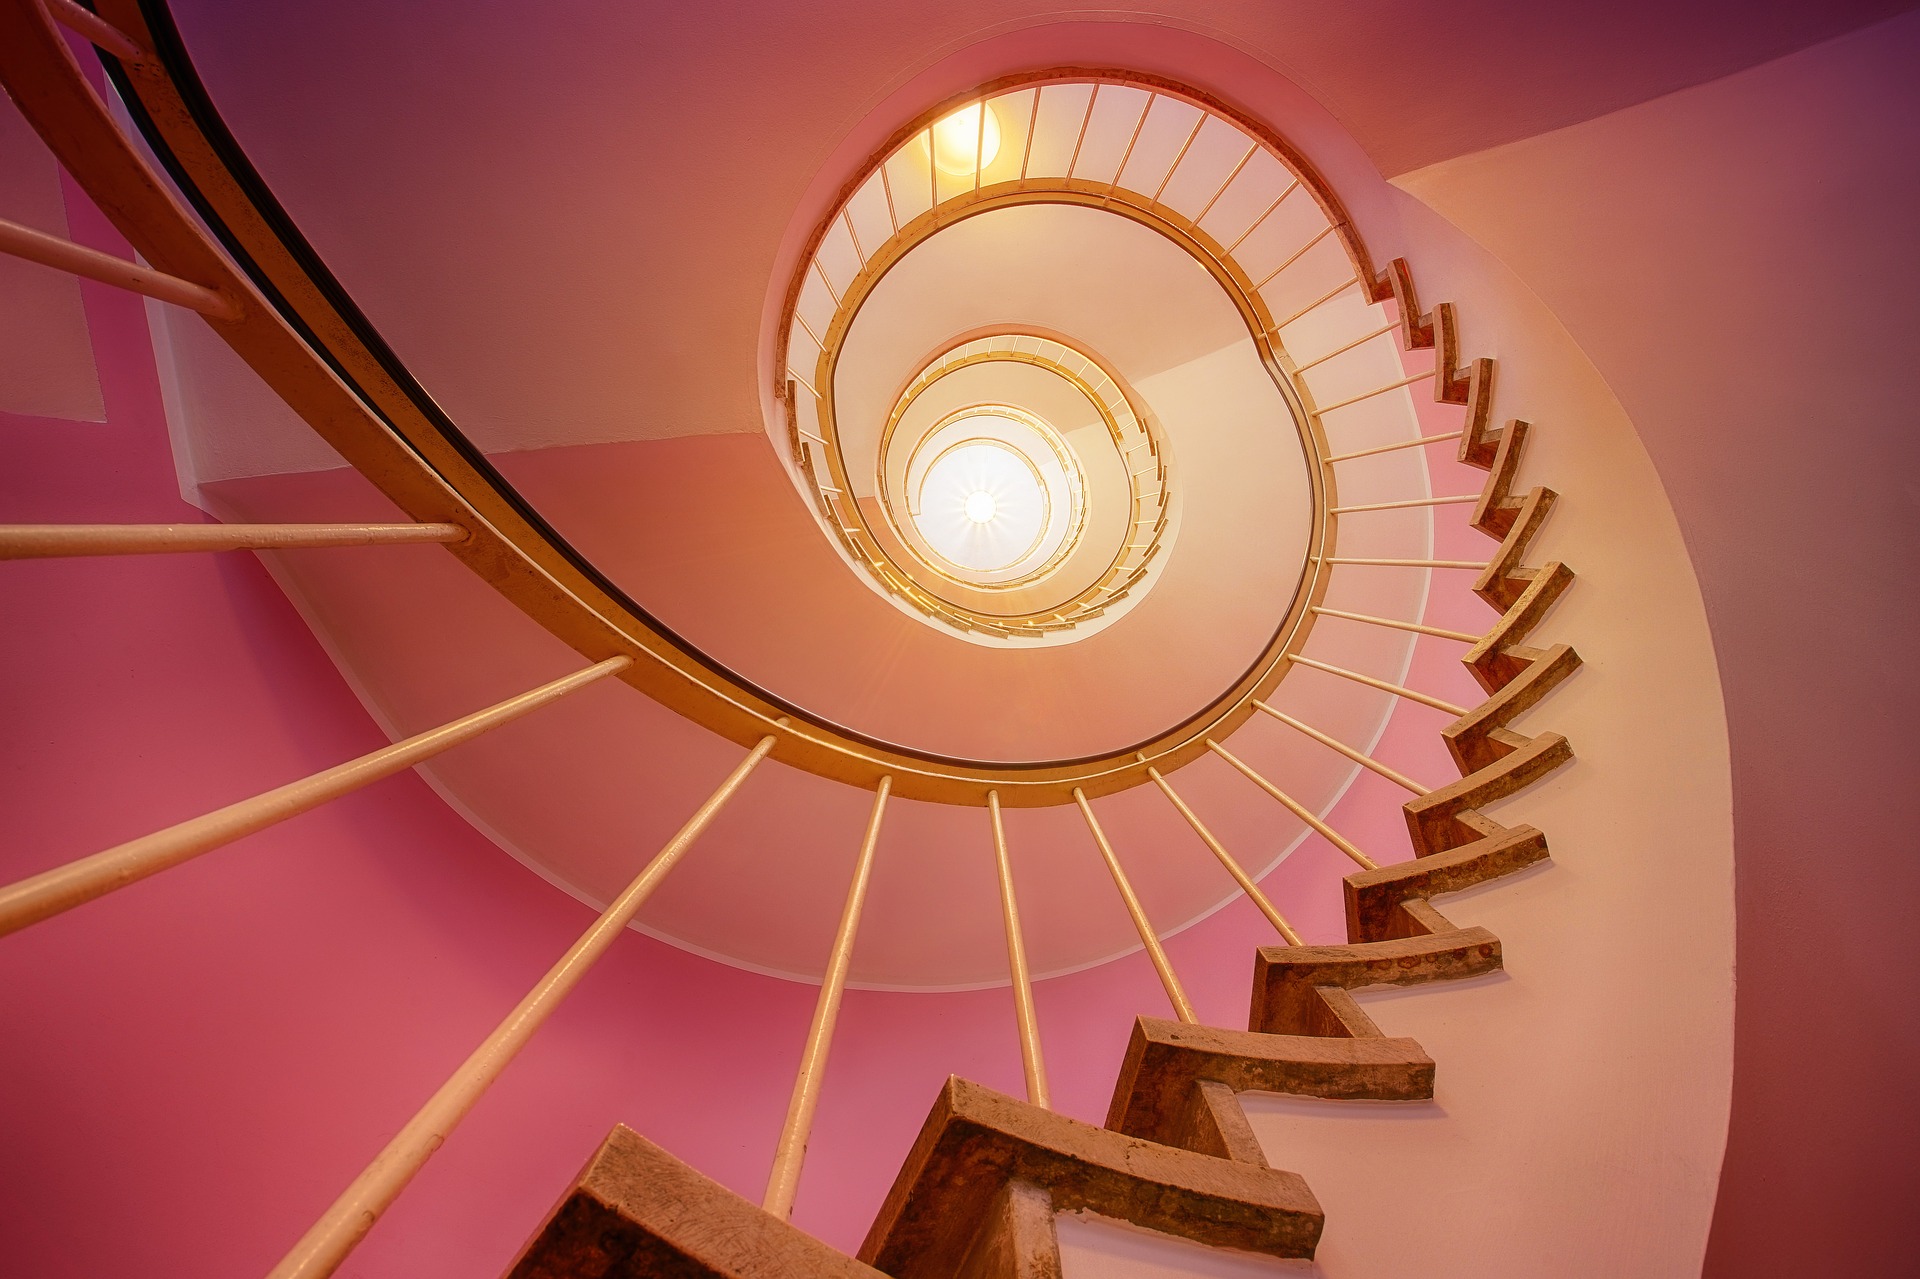 Circular spiral staircase